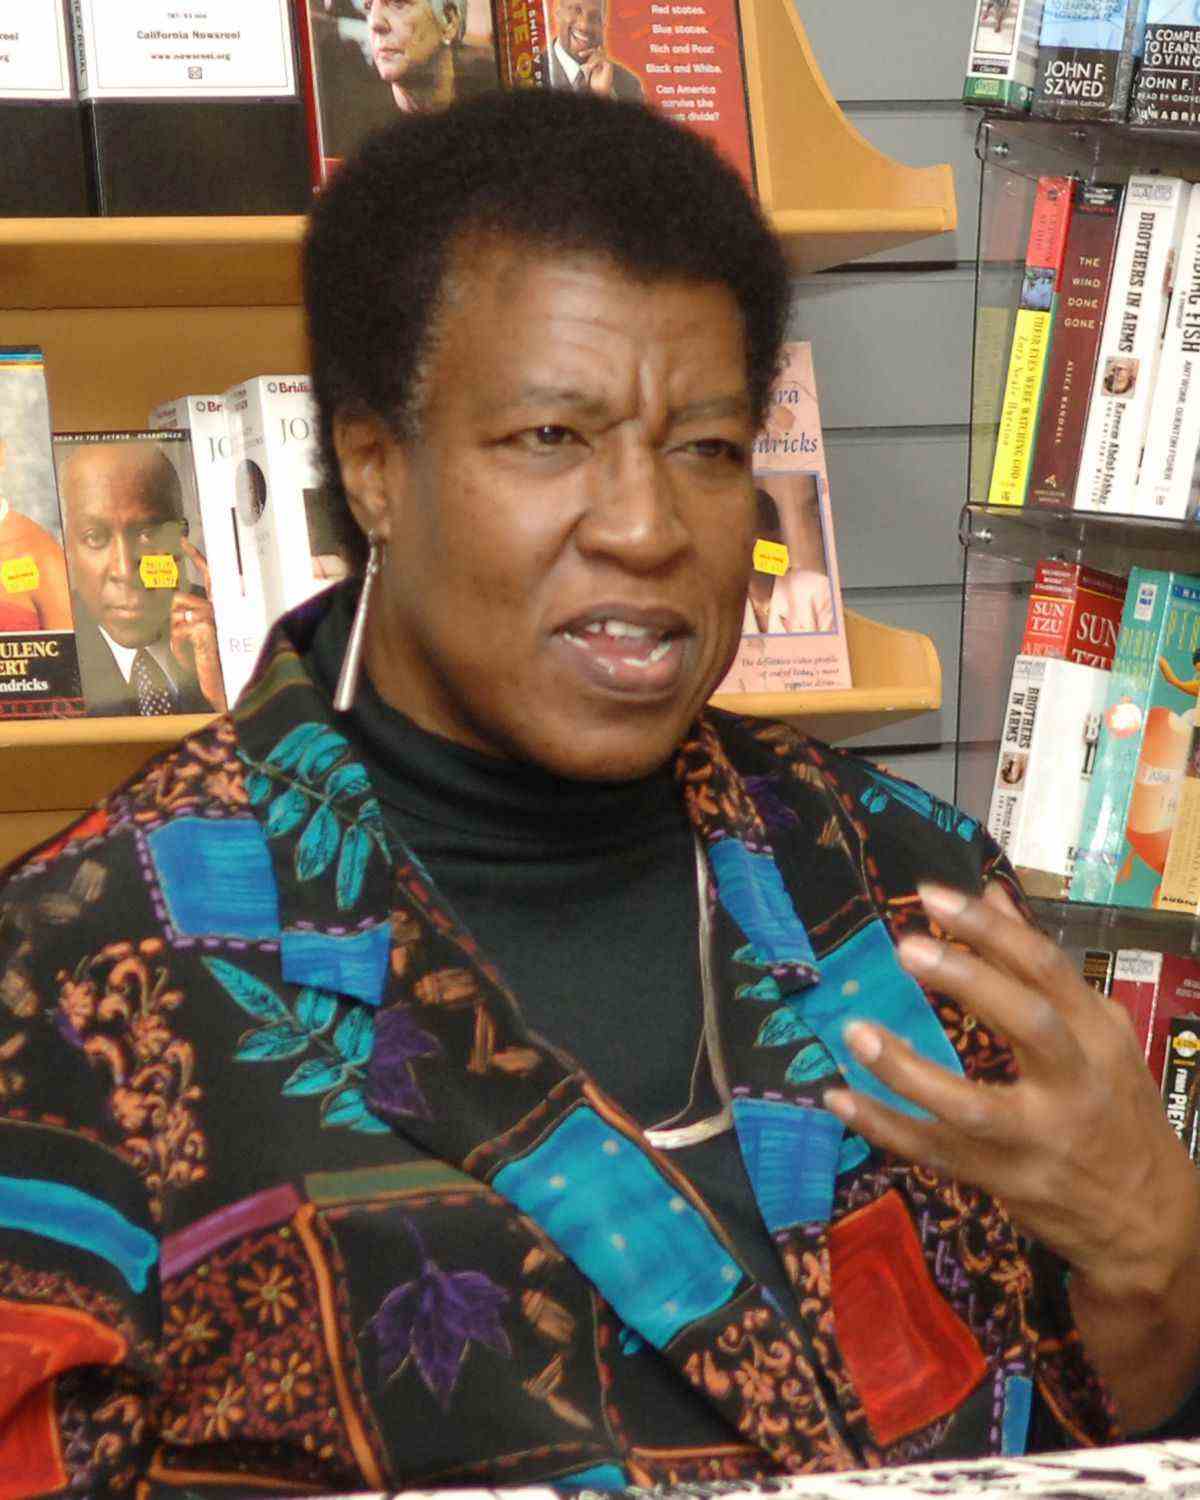 Octavia E. Butler dans les années 1990, vêtue d'une chemise à motifs avec des motifs de feuilles d'arbres et de longues boucles d'oreilles en métal, est surprise au milieu d'une phrase lors d'une lecture dans une librairie